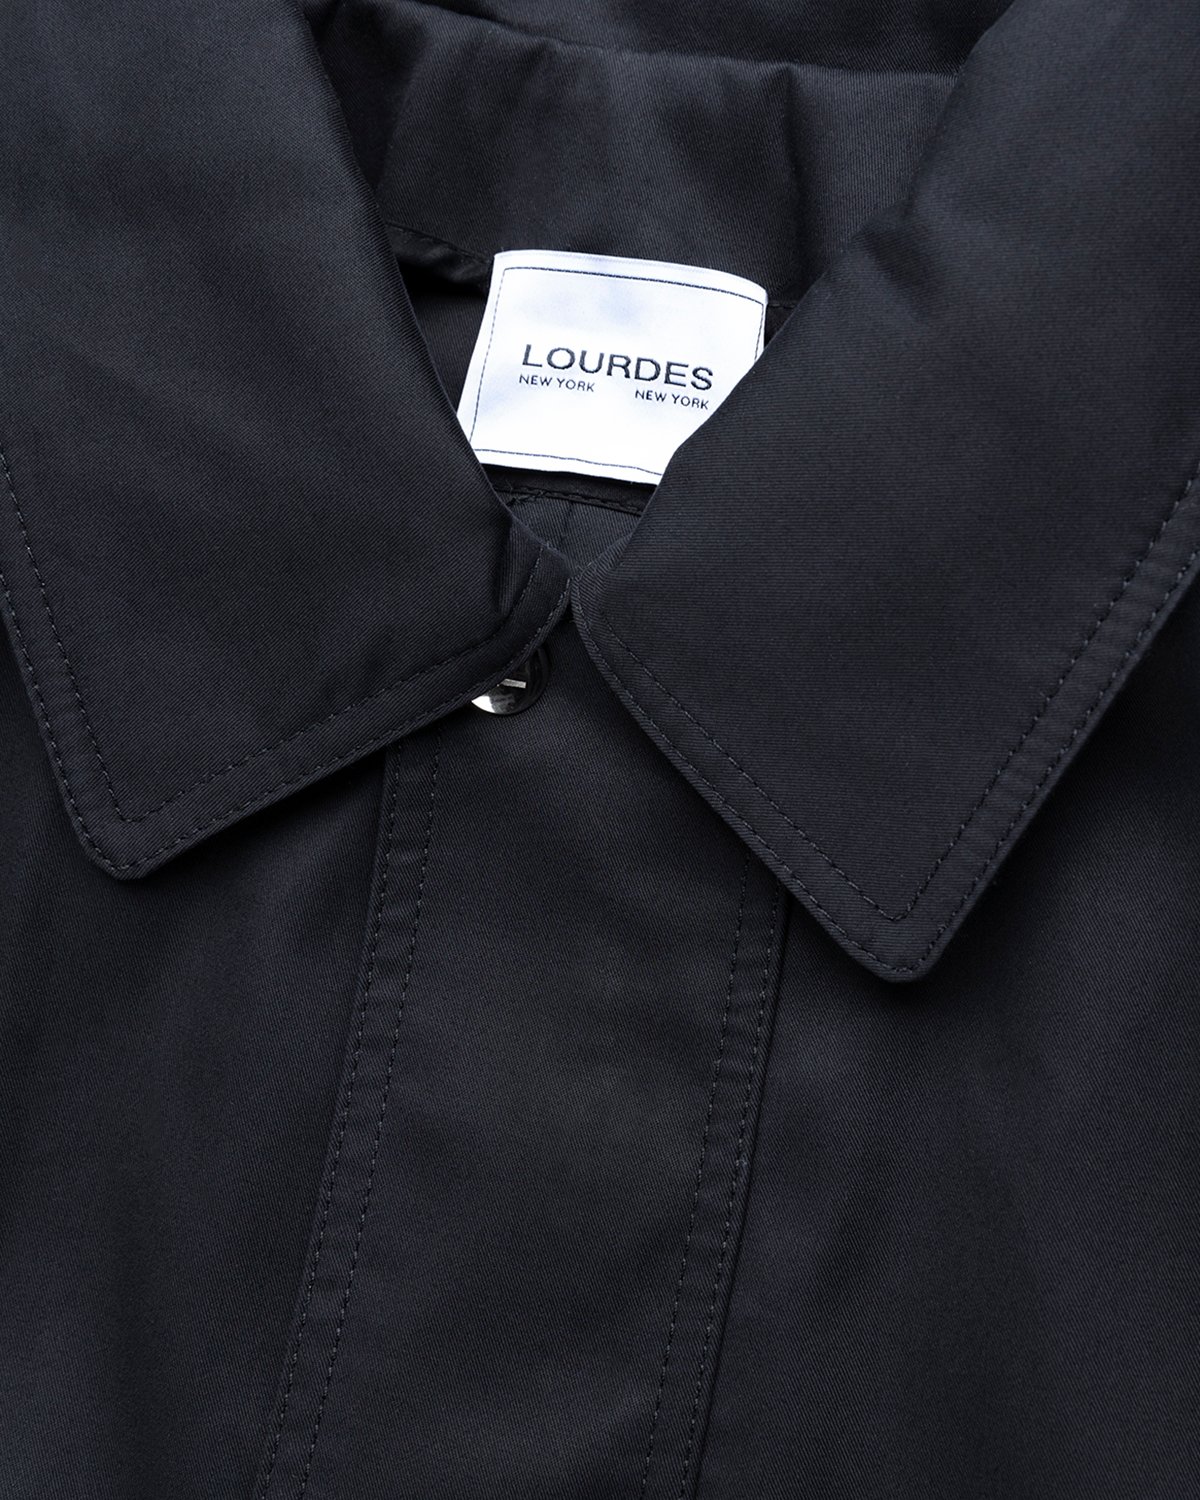 Lourdes New York - Backless Jacket Black - Clothing - Black - Image 4